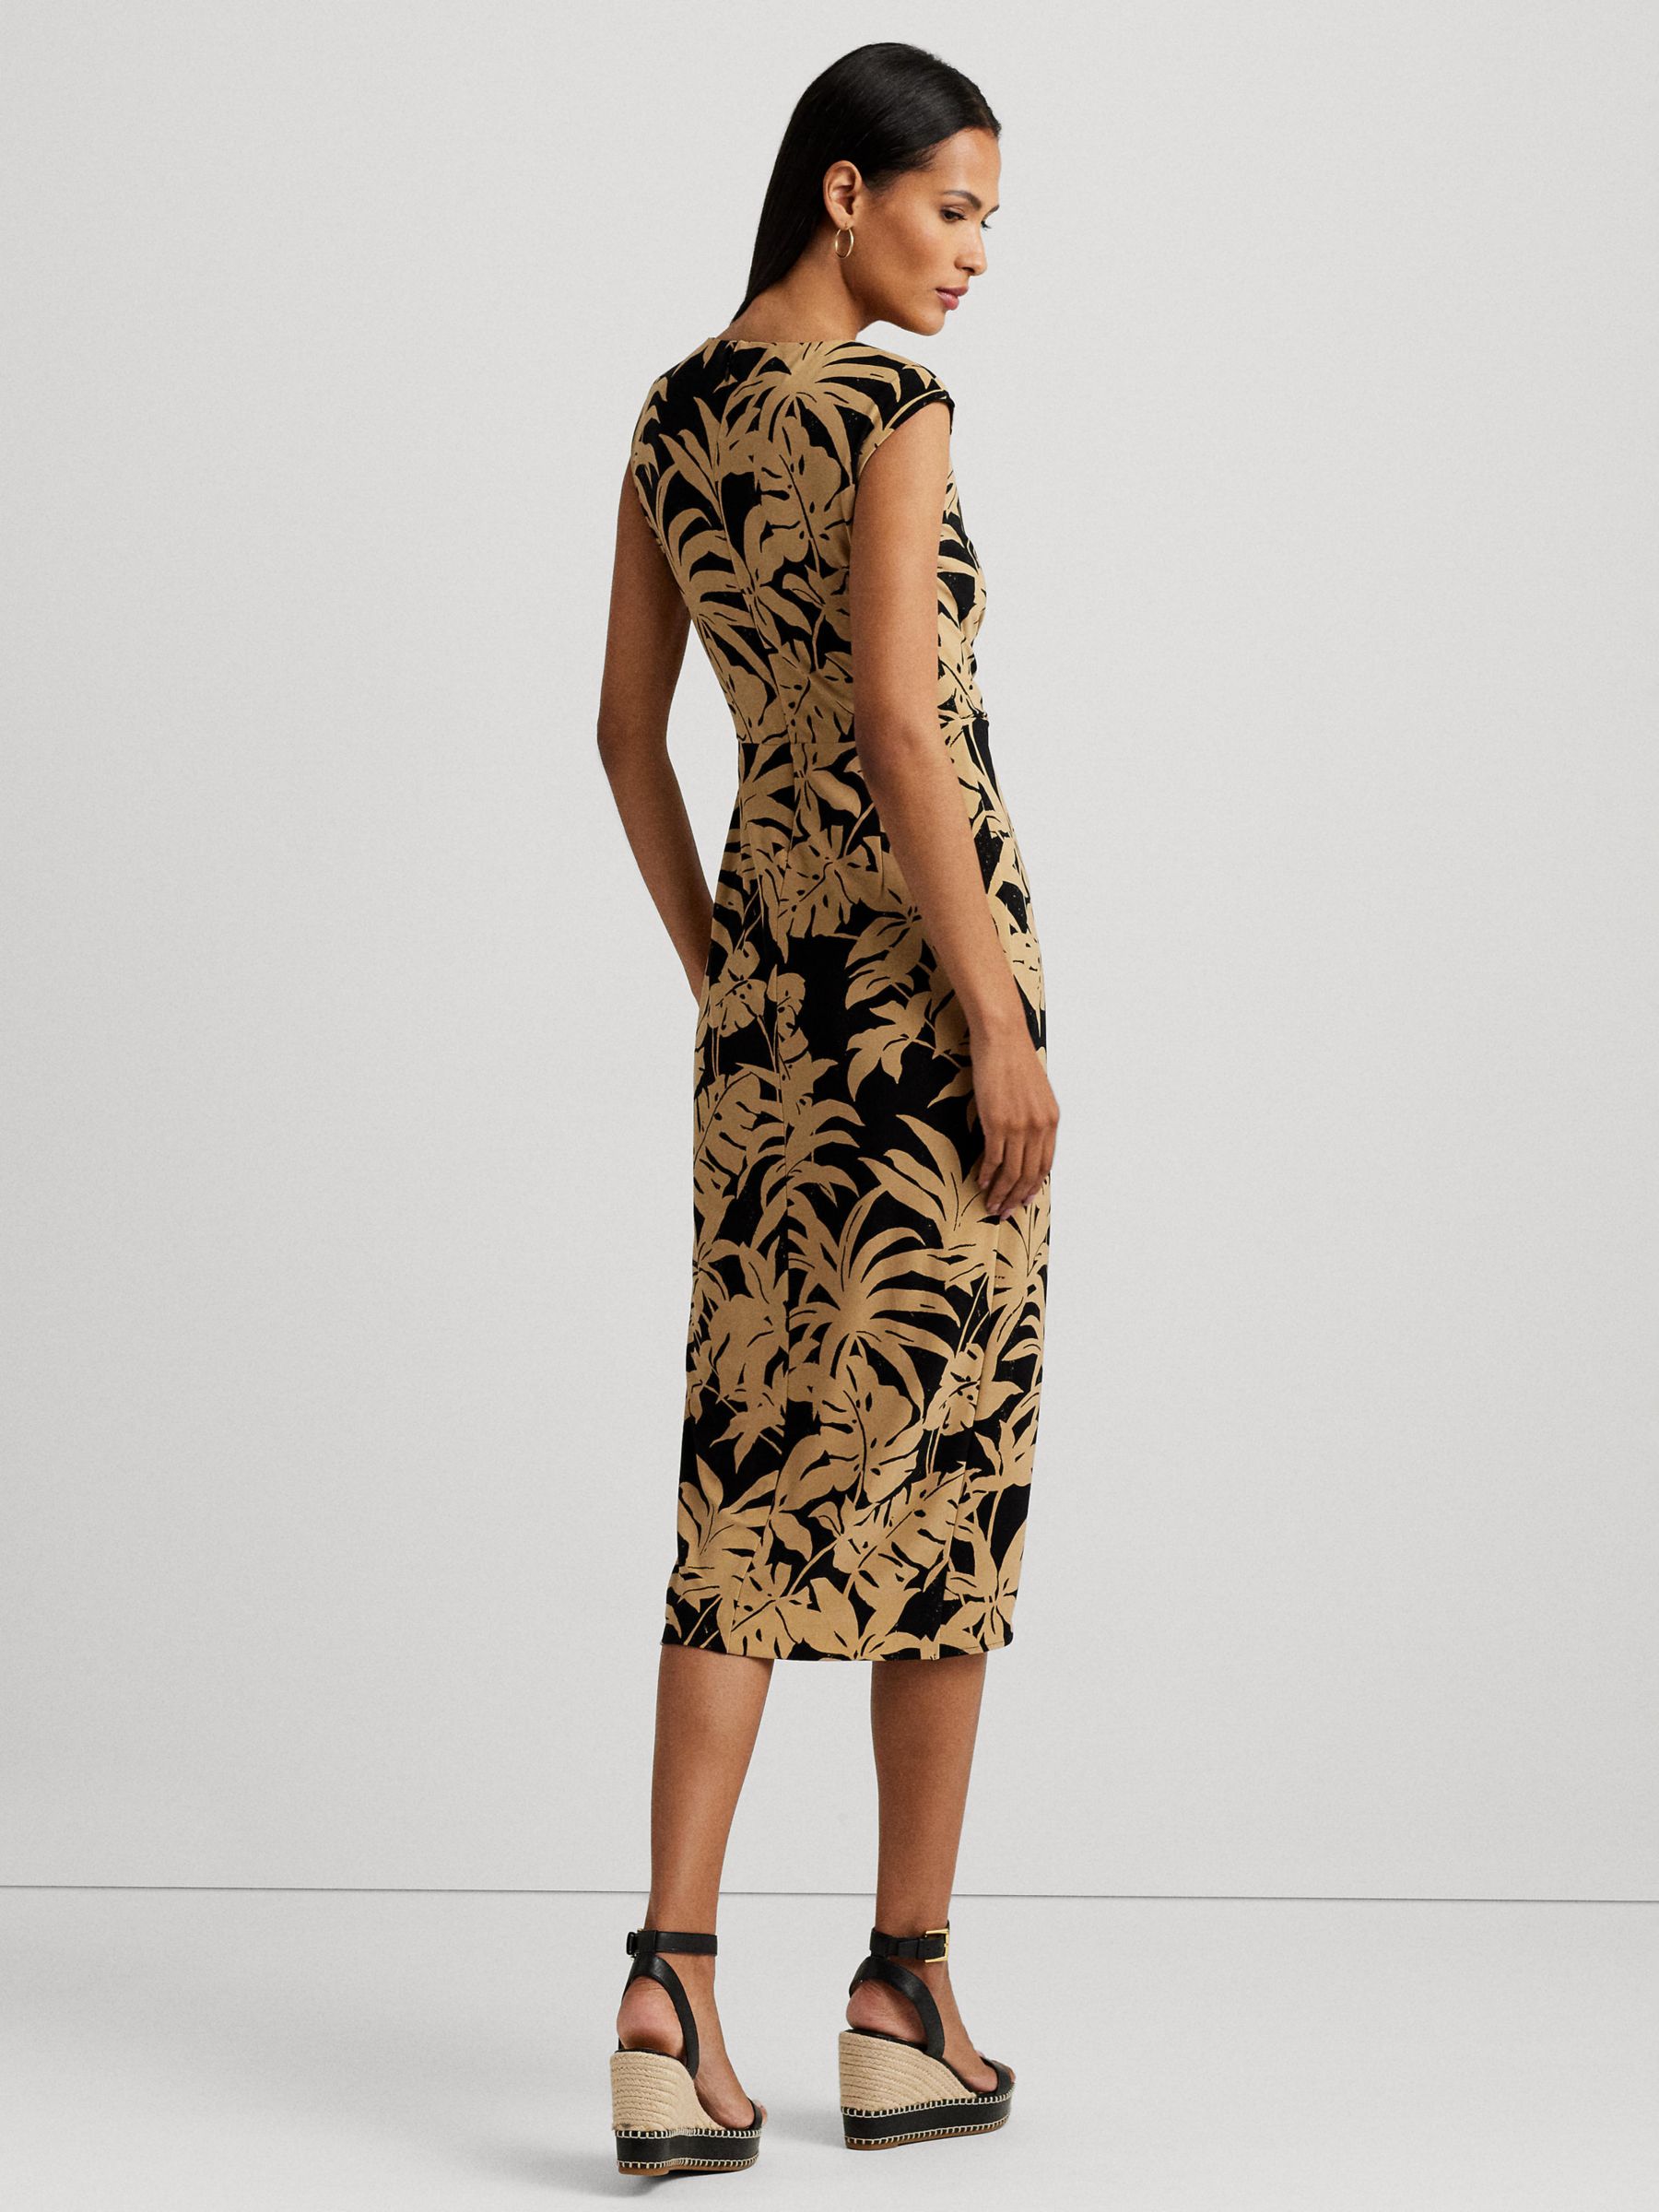 Lauren Ralph Lauren Reidly Palm Print Jersey Tie Front Midi Dress, Tan/Black, 10